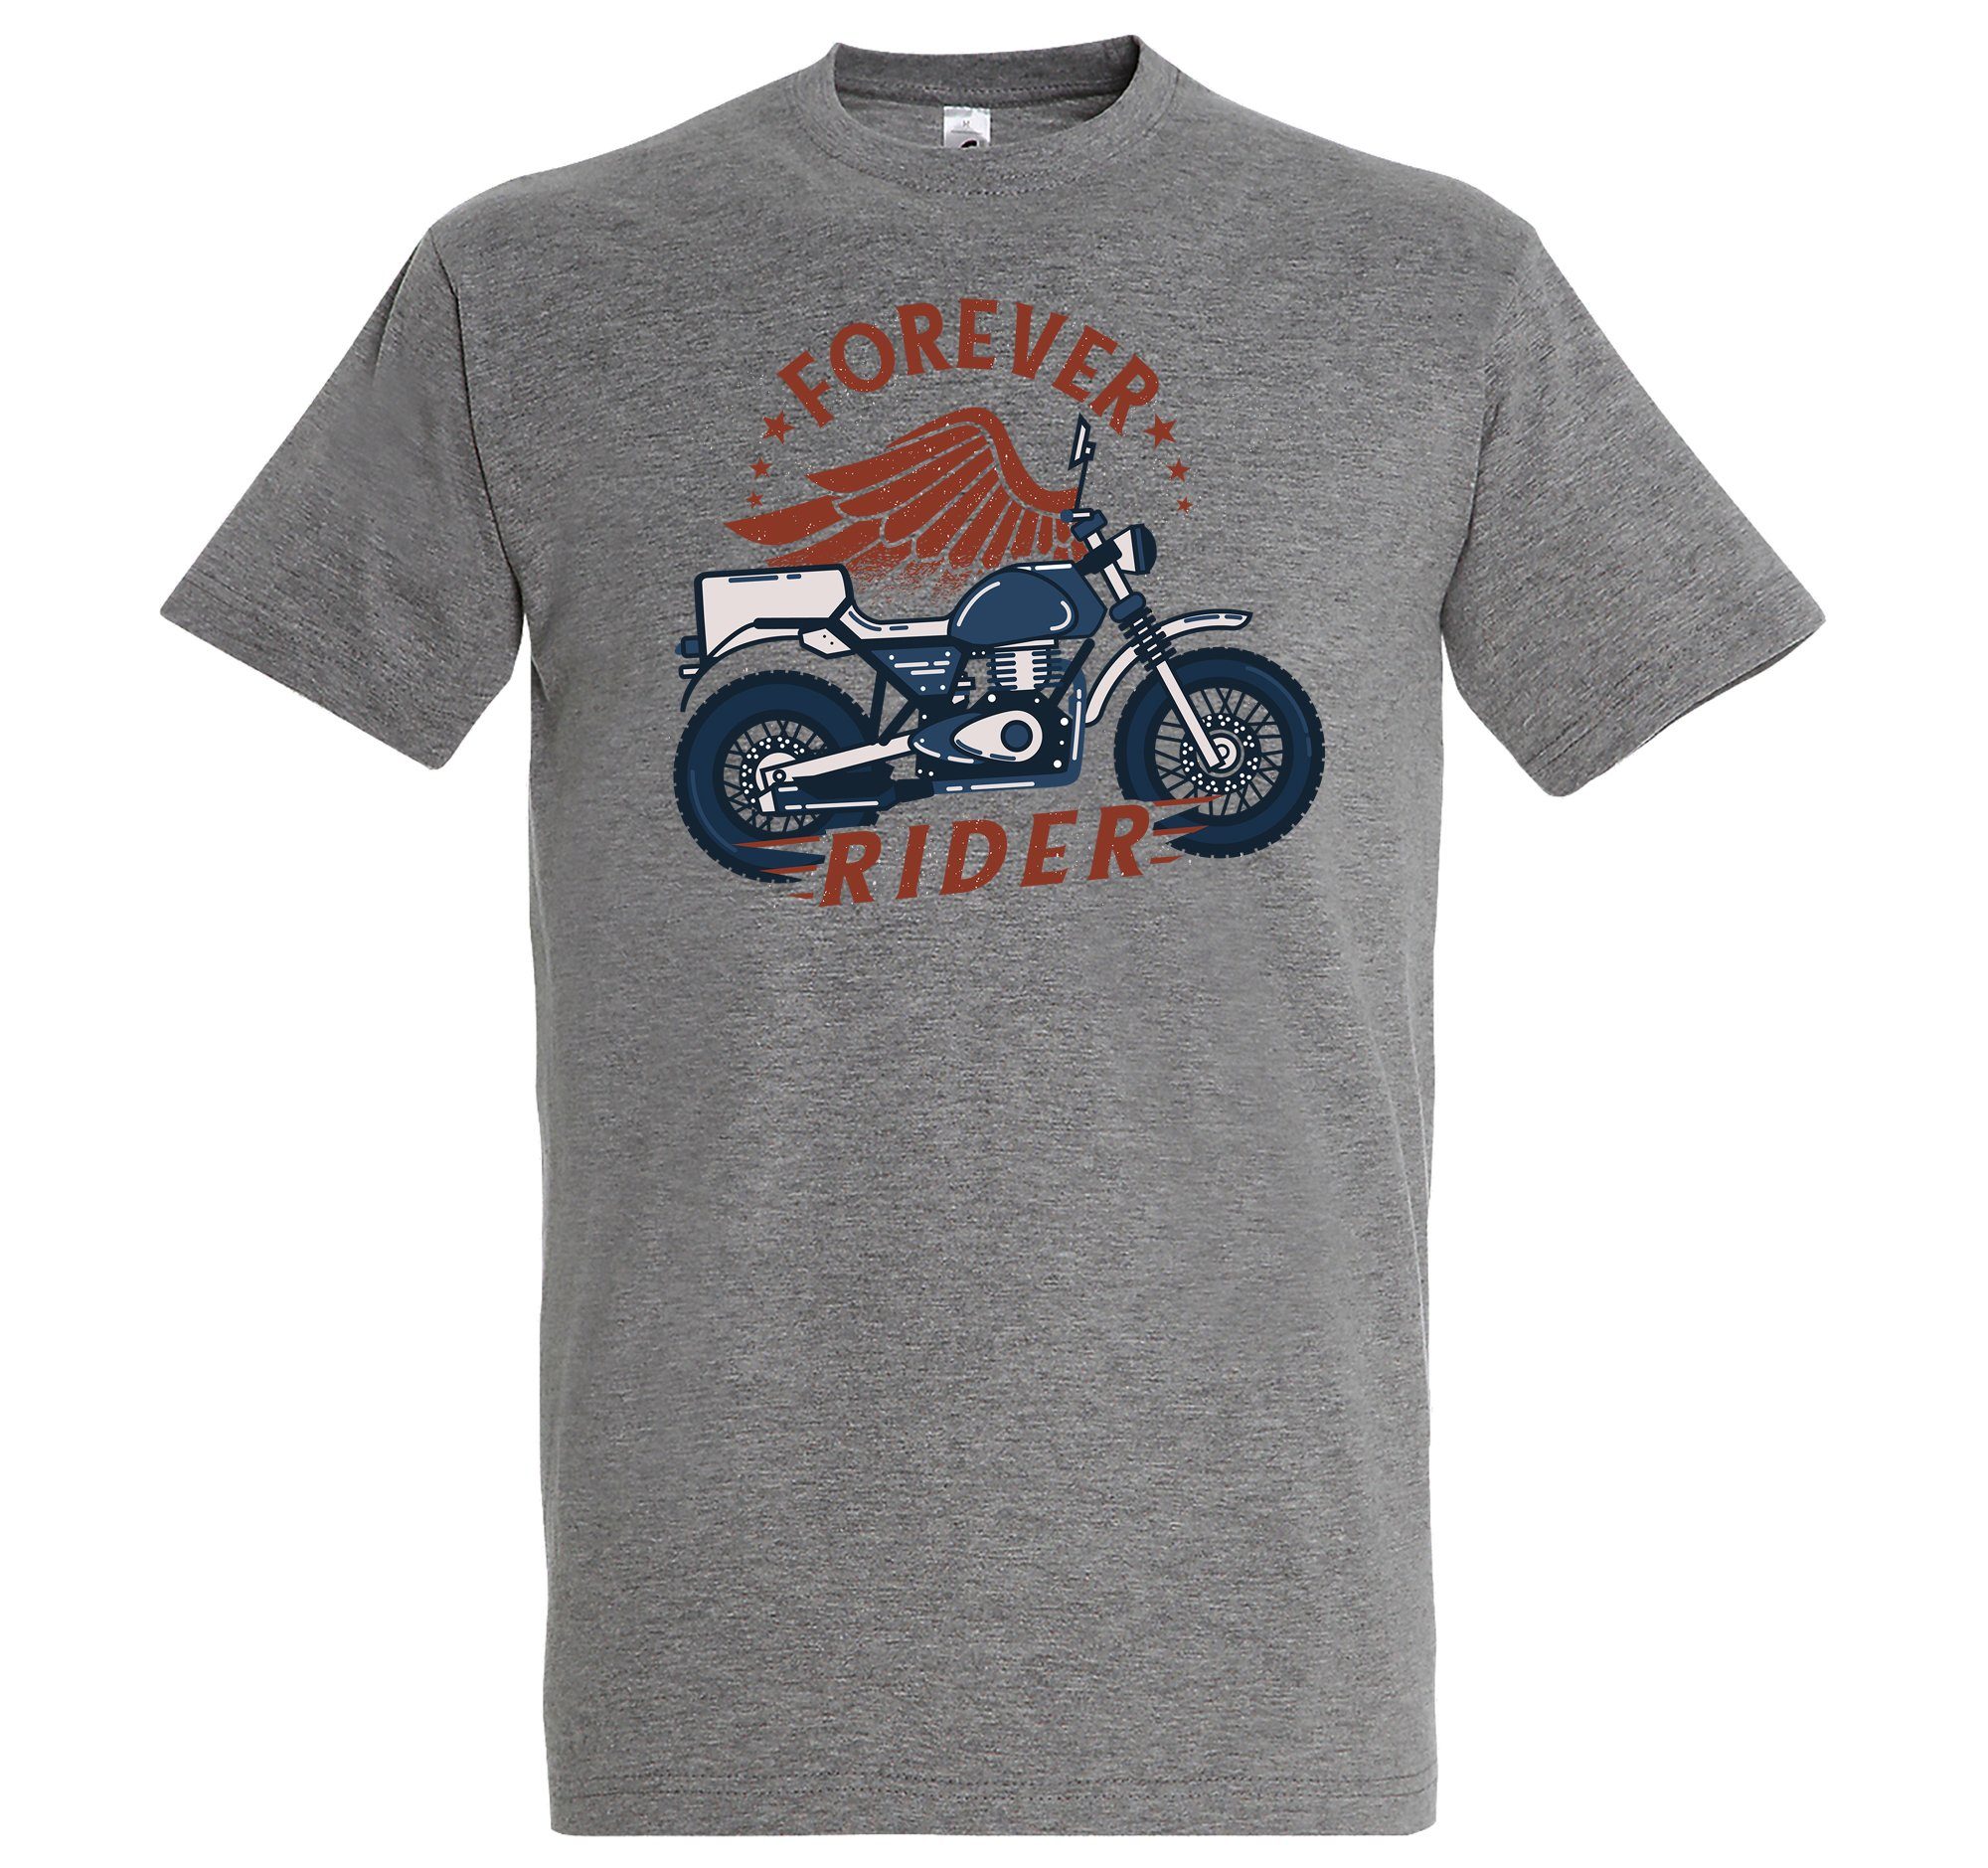 Youth Designz T-Shirt Frontprint Forever trendigem mit Shirt Grau Rider Herren